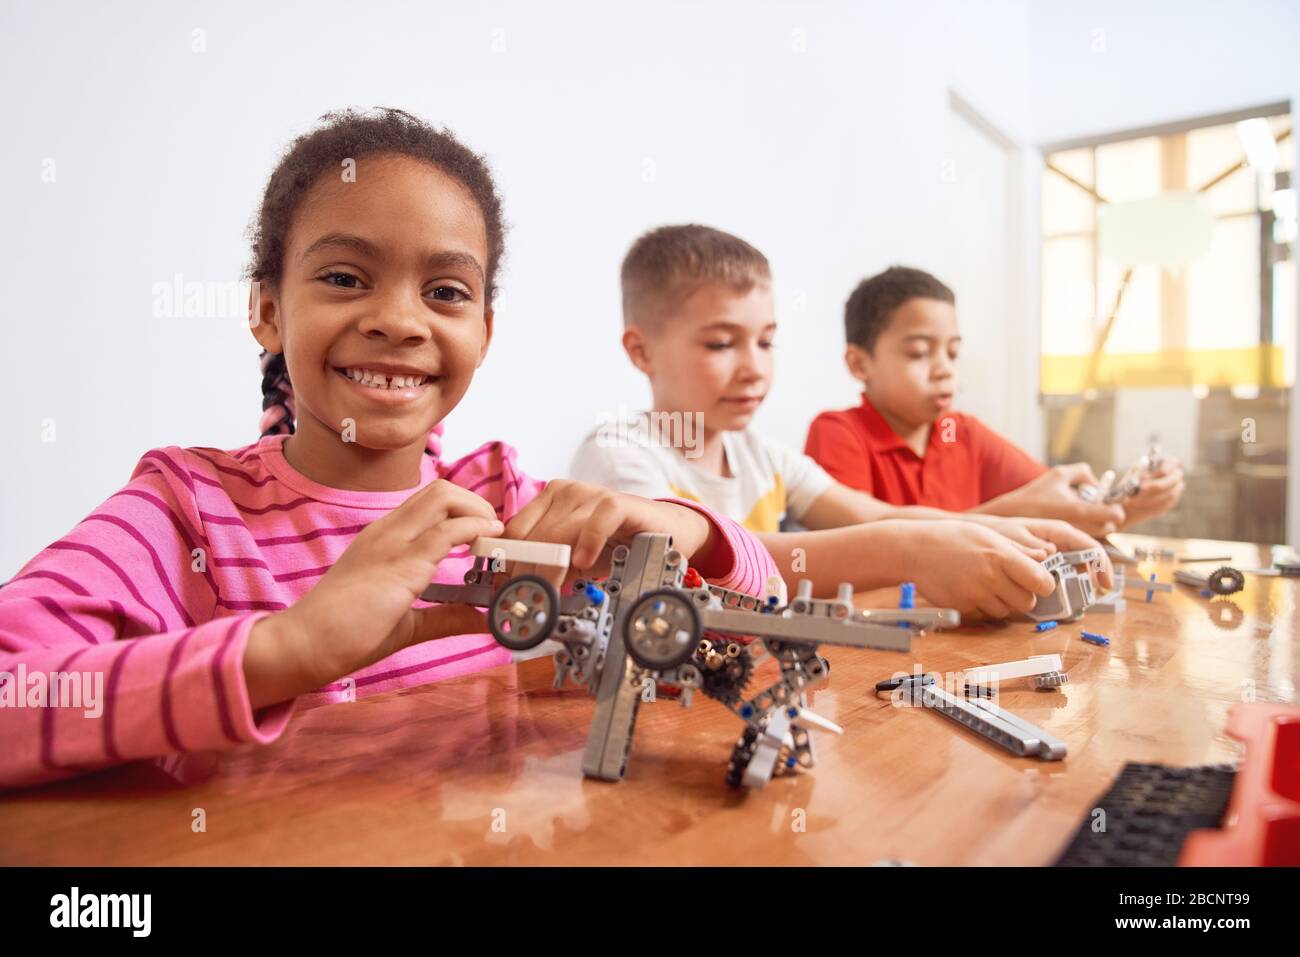 Vue latérale du kit de construction pour un groupe de trois enfants multiraciaux créant des jouets, ayant des émotions et de la joie positives, fille africaine souriant et regardant la came Banque D'Images